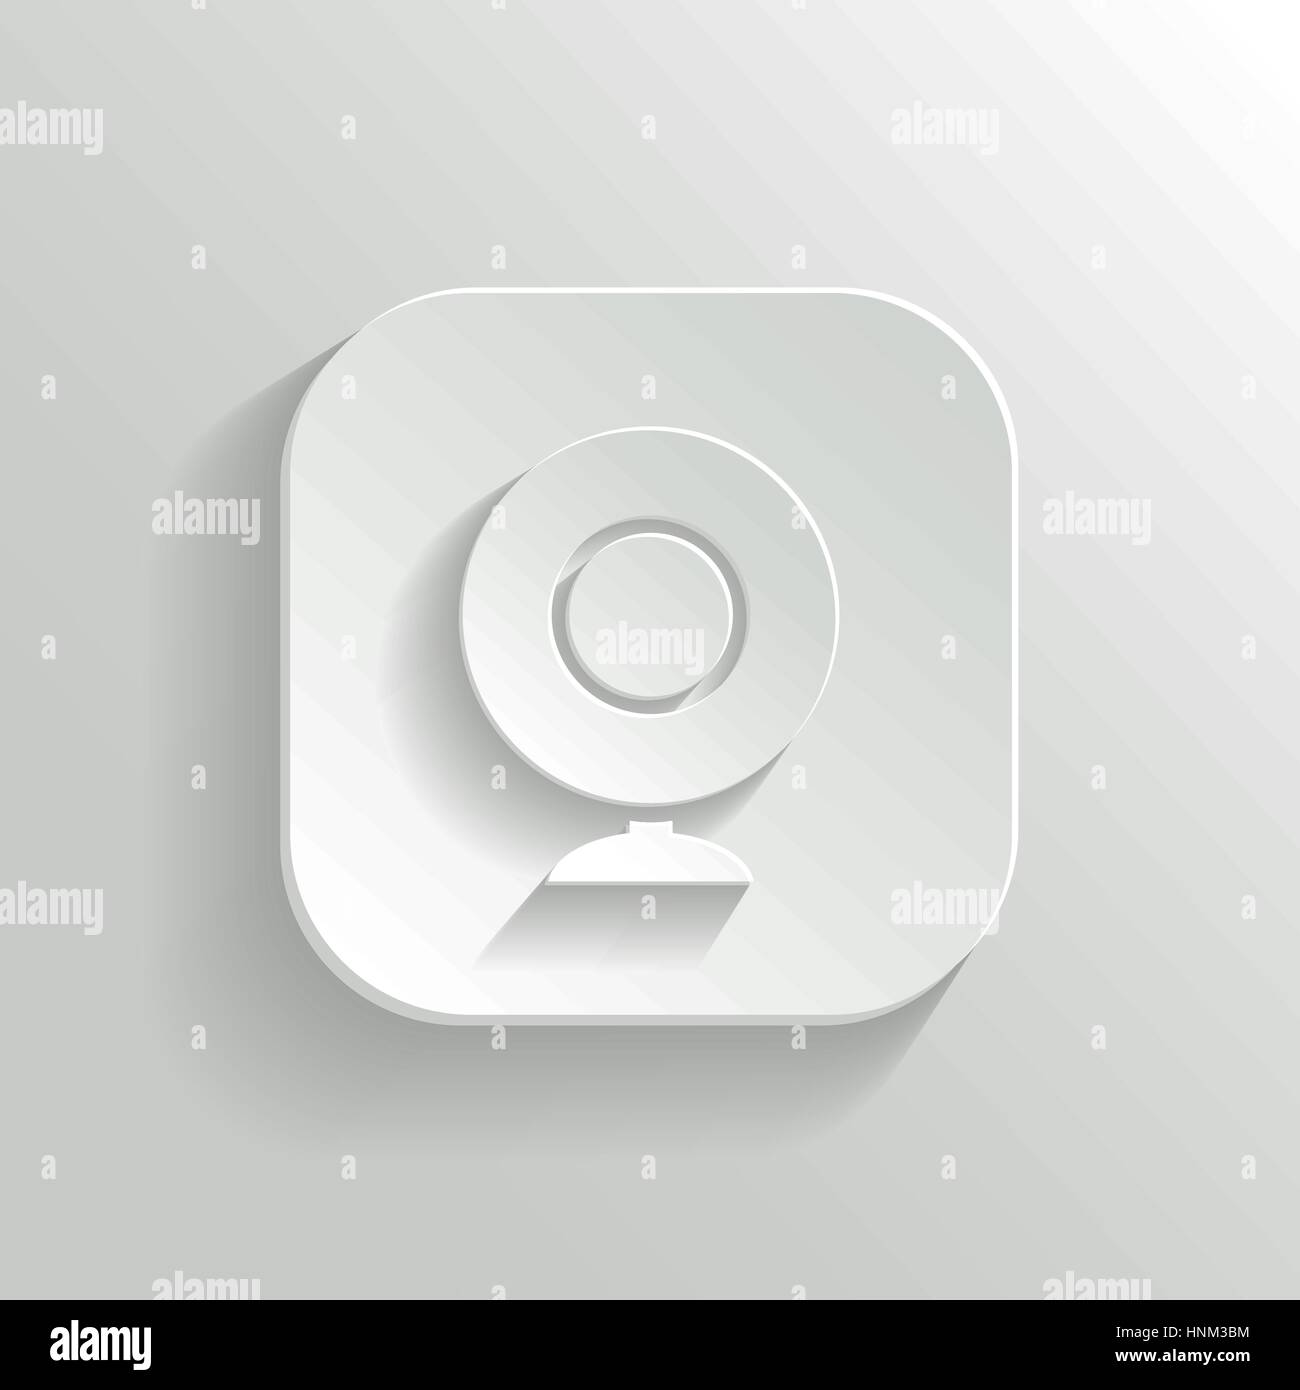 Webcamera icon - vector white app button with shadow Stock Vector